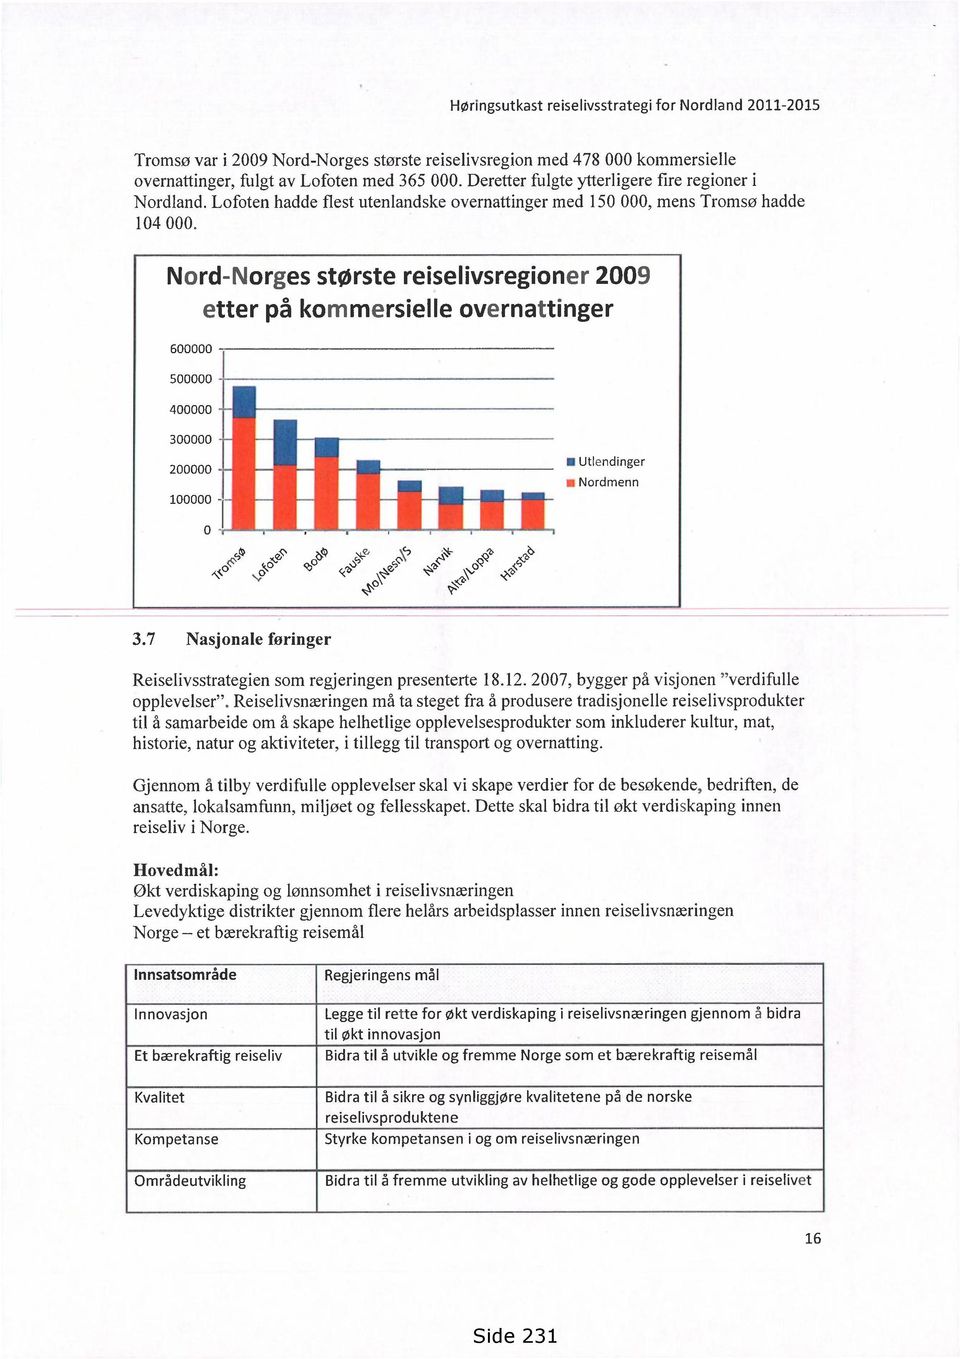 Nord-Norges største reiselivsregioner 2009 etter på kommersielle overnattinger 600000 500000 400000 300000 200000 Utlendinger Nordmenn 100000 1 0,SC s\ 2' k&" cbc, \ or <-\()\ 3.